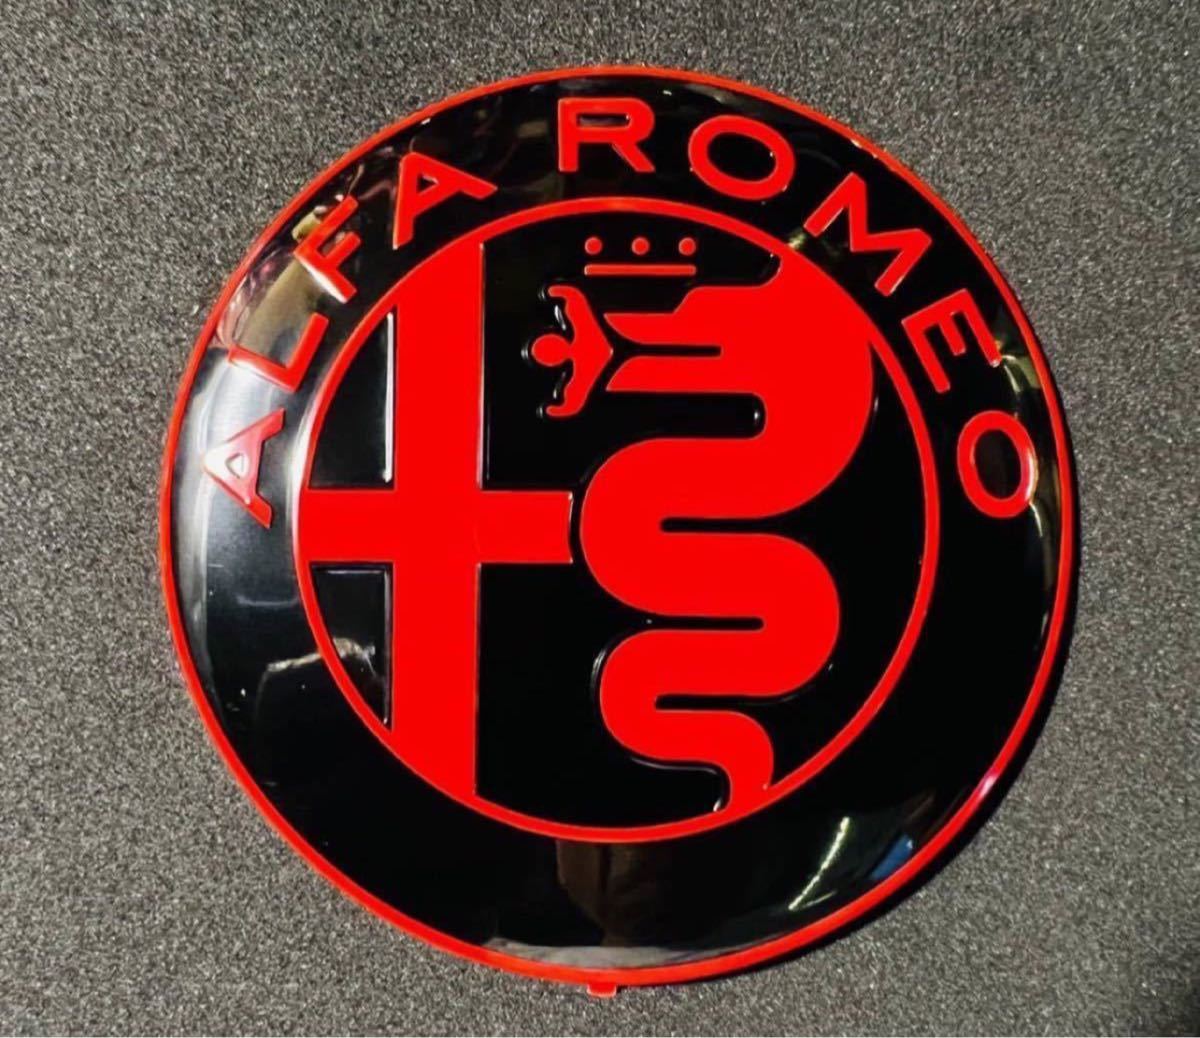 ★ Alfa Romeo アルファロメオ フロント/リアエンブレム BLK/RED ブラック/レッド ロゴ 74mm 2個セット アルミ製 ★_画像6